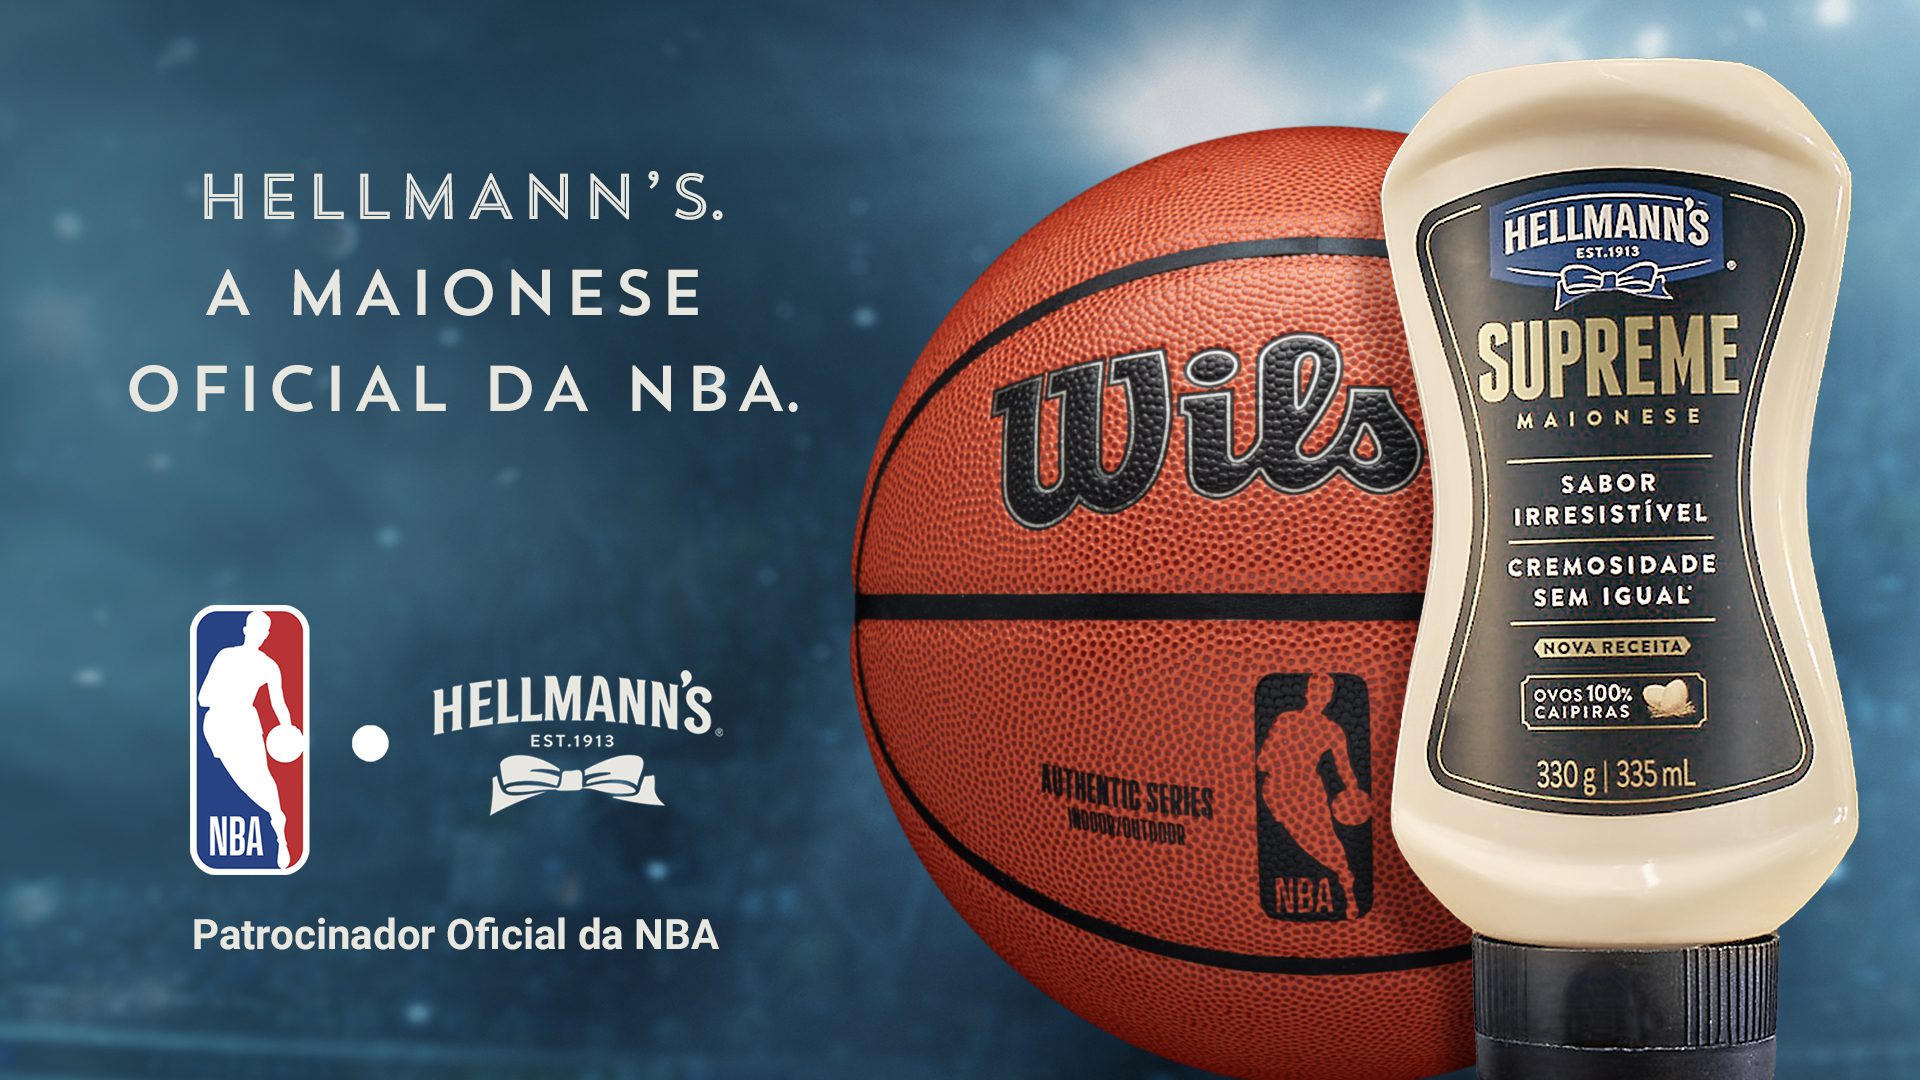 Featured image for “Hellmann’s é a marca oficial da NBA no Brasil”